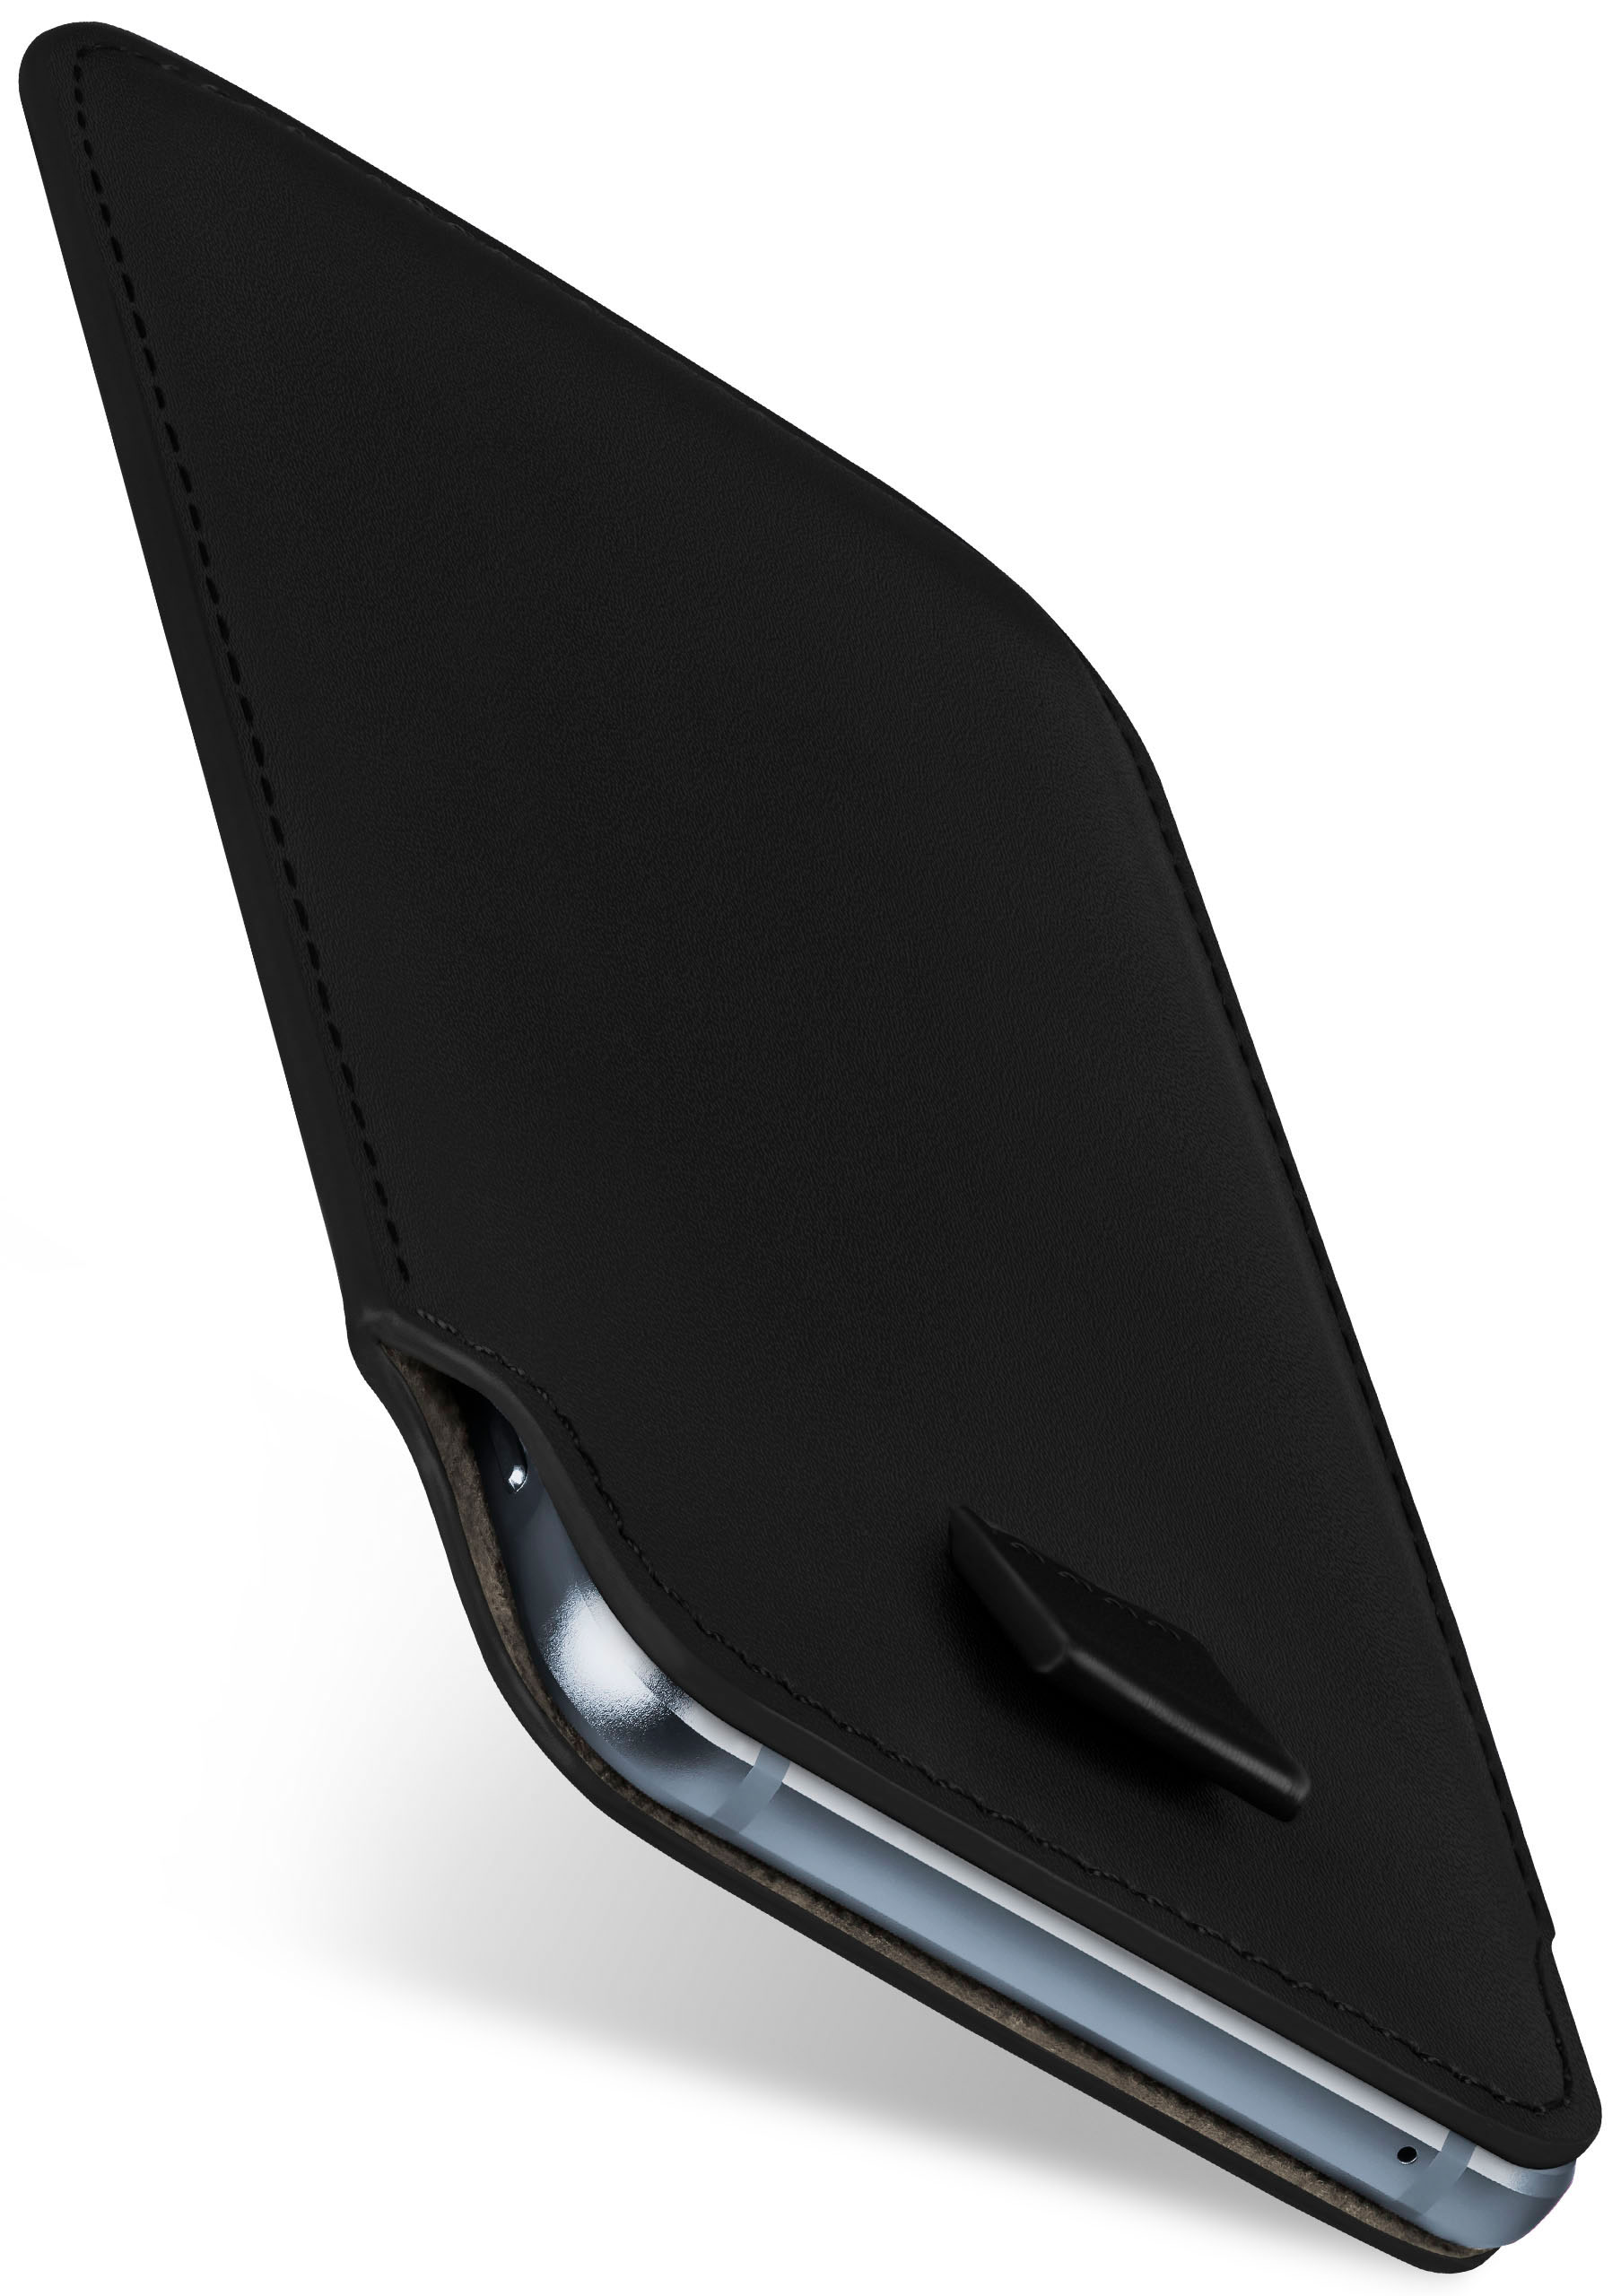 MOEX Slide Play, Z2 Moto Deep-Black Case, Motorola, Cover, Full